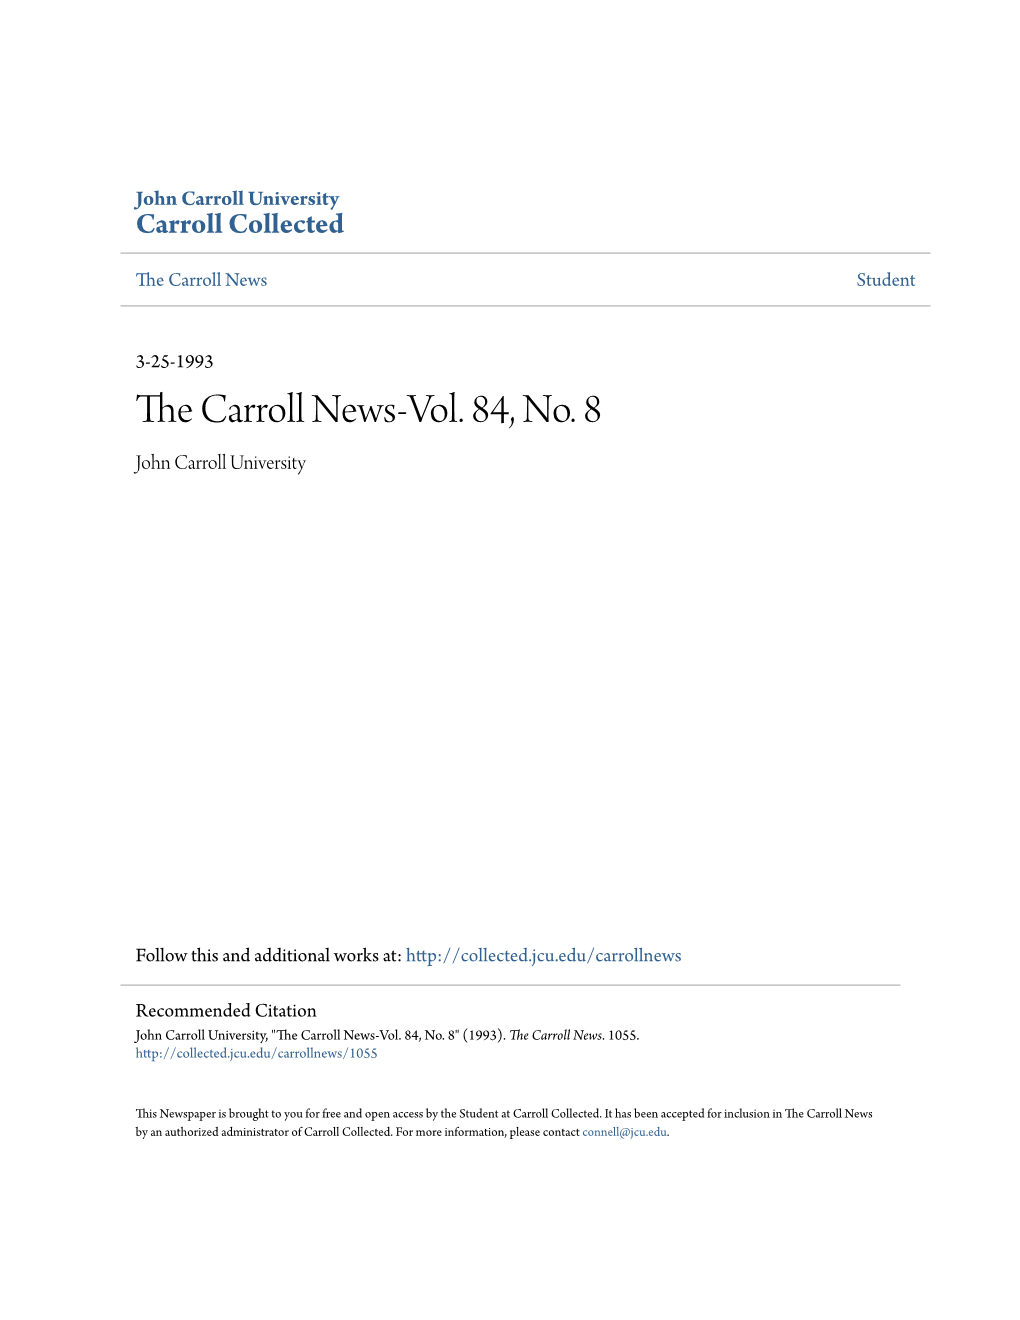 The Carroll News-Vol. 84, No. 8